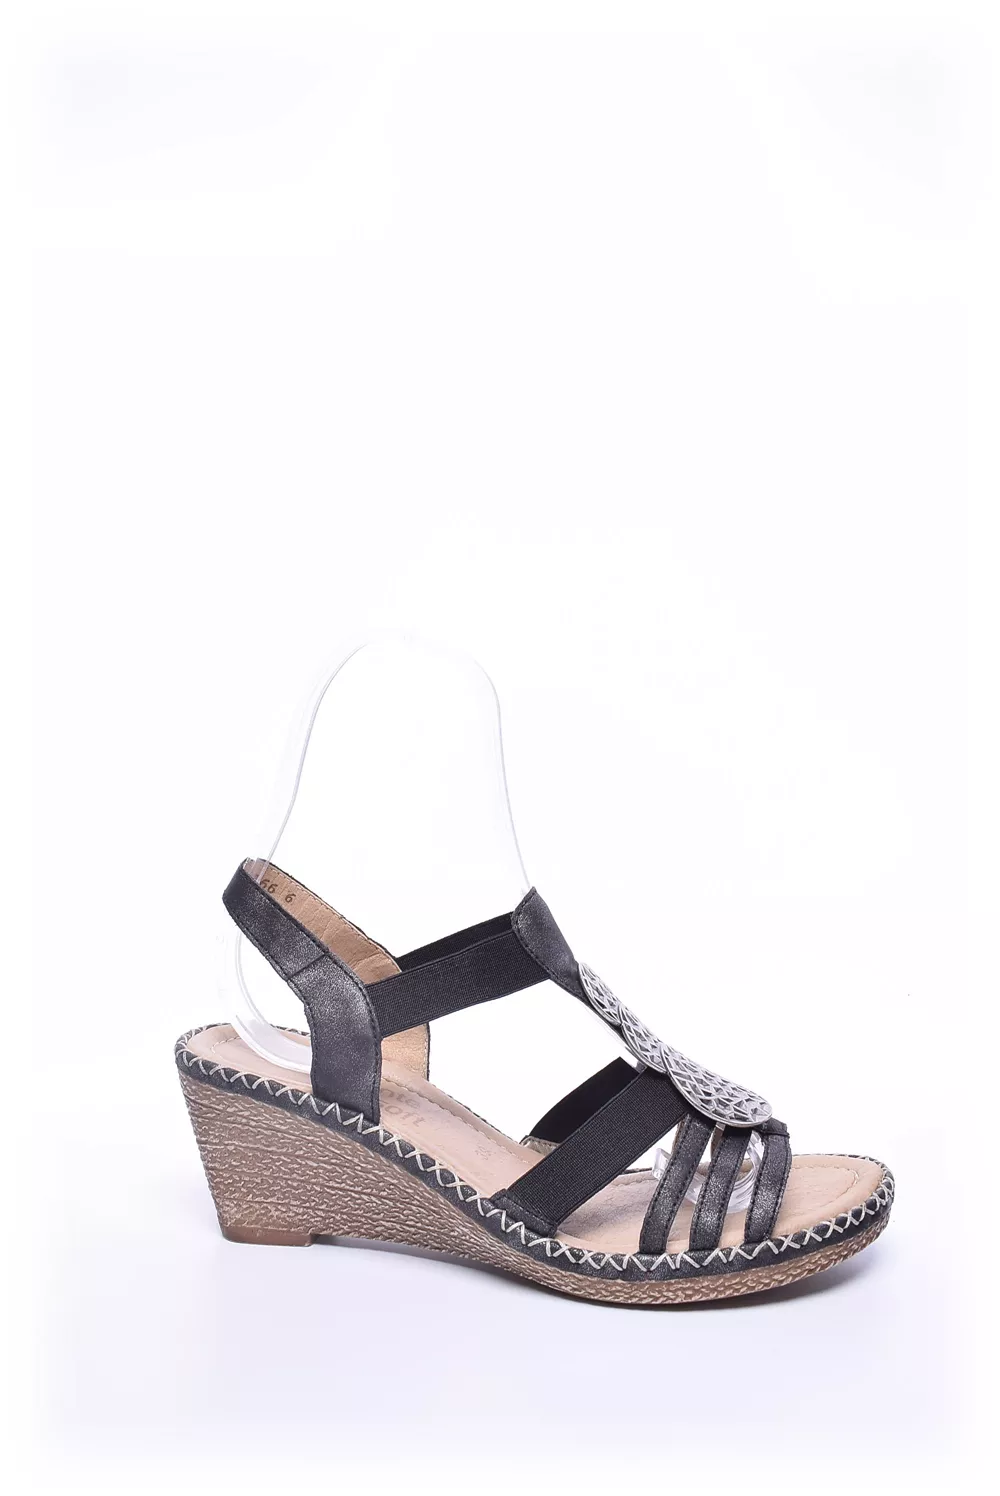 Sandale dama [1]